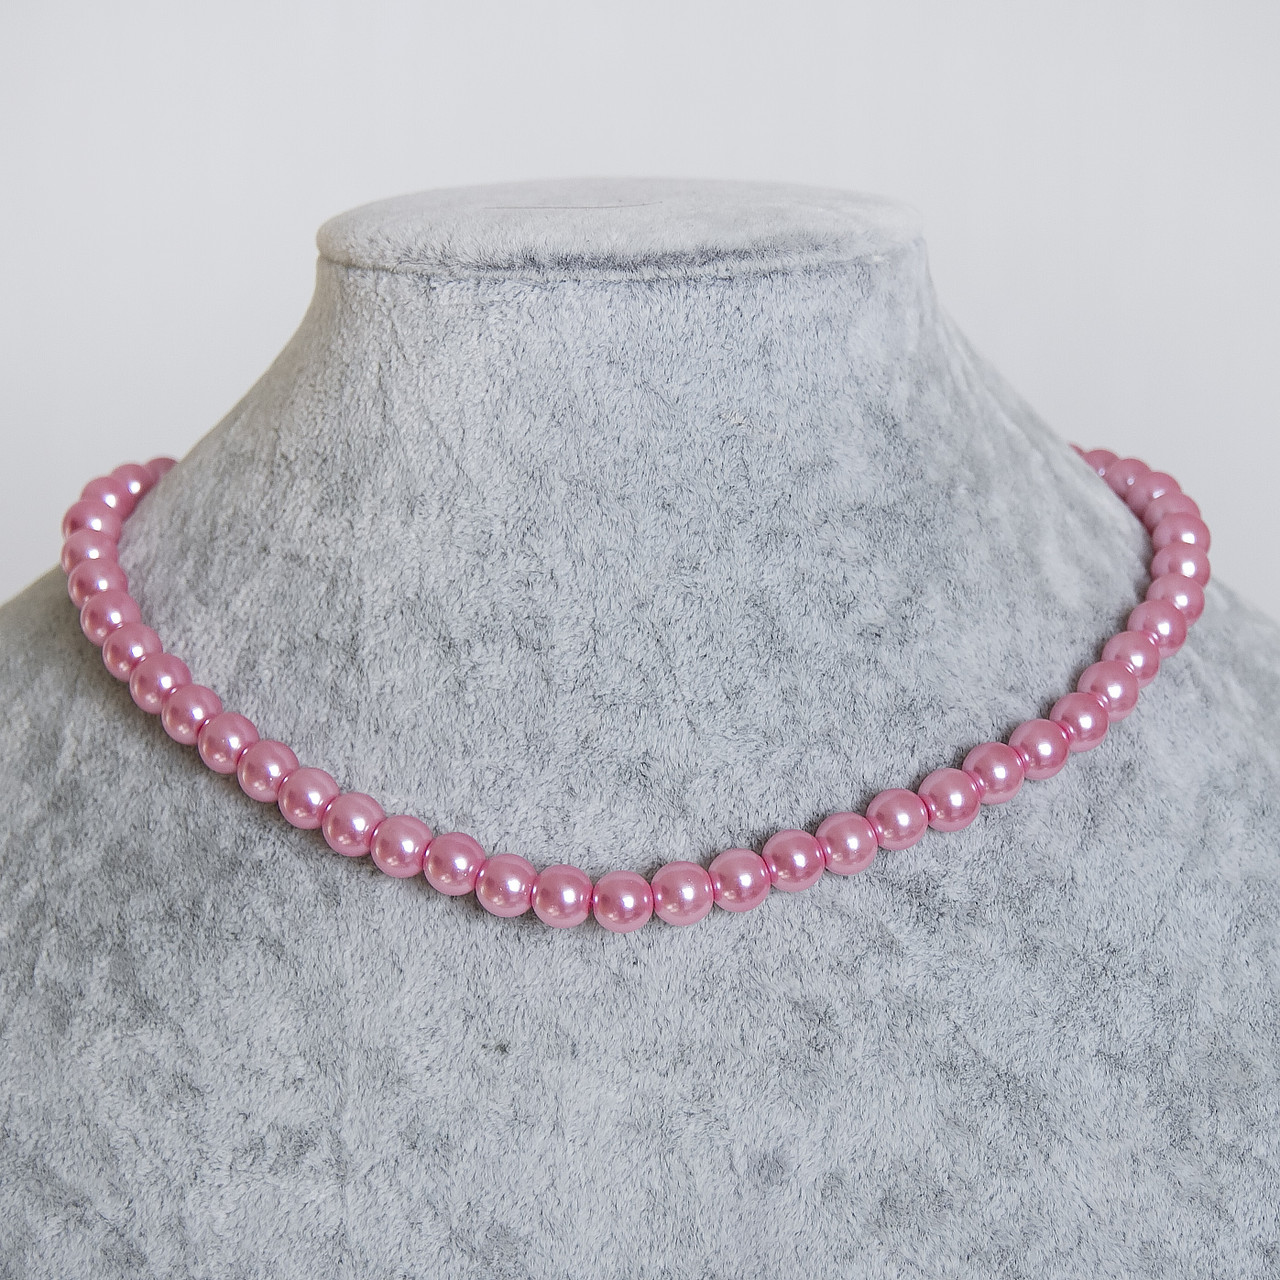 Бусы ожерелье цвет нежно розовый круглые акриловые под шею длинна 43 см размер шарика 8 мм застёжка карабин